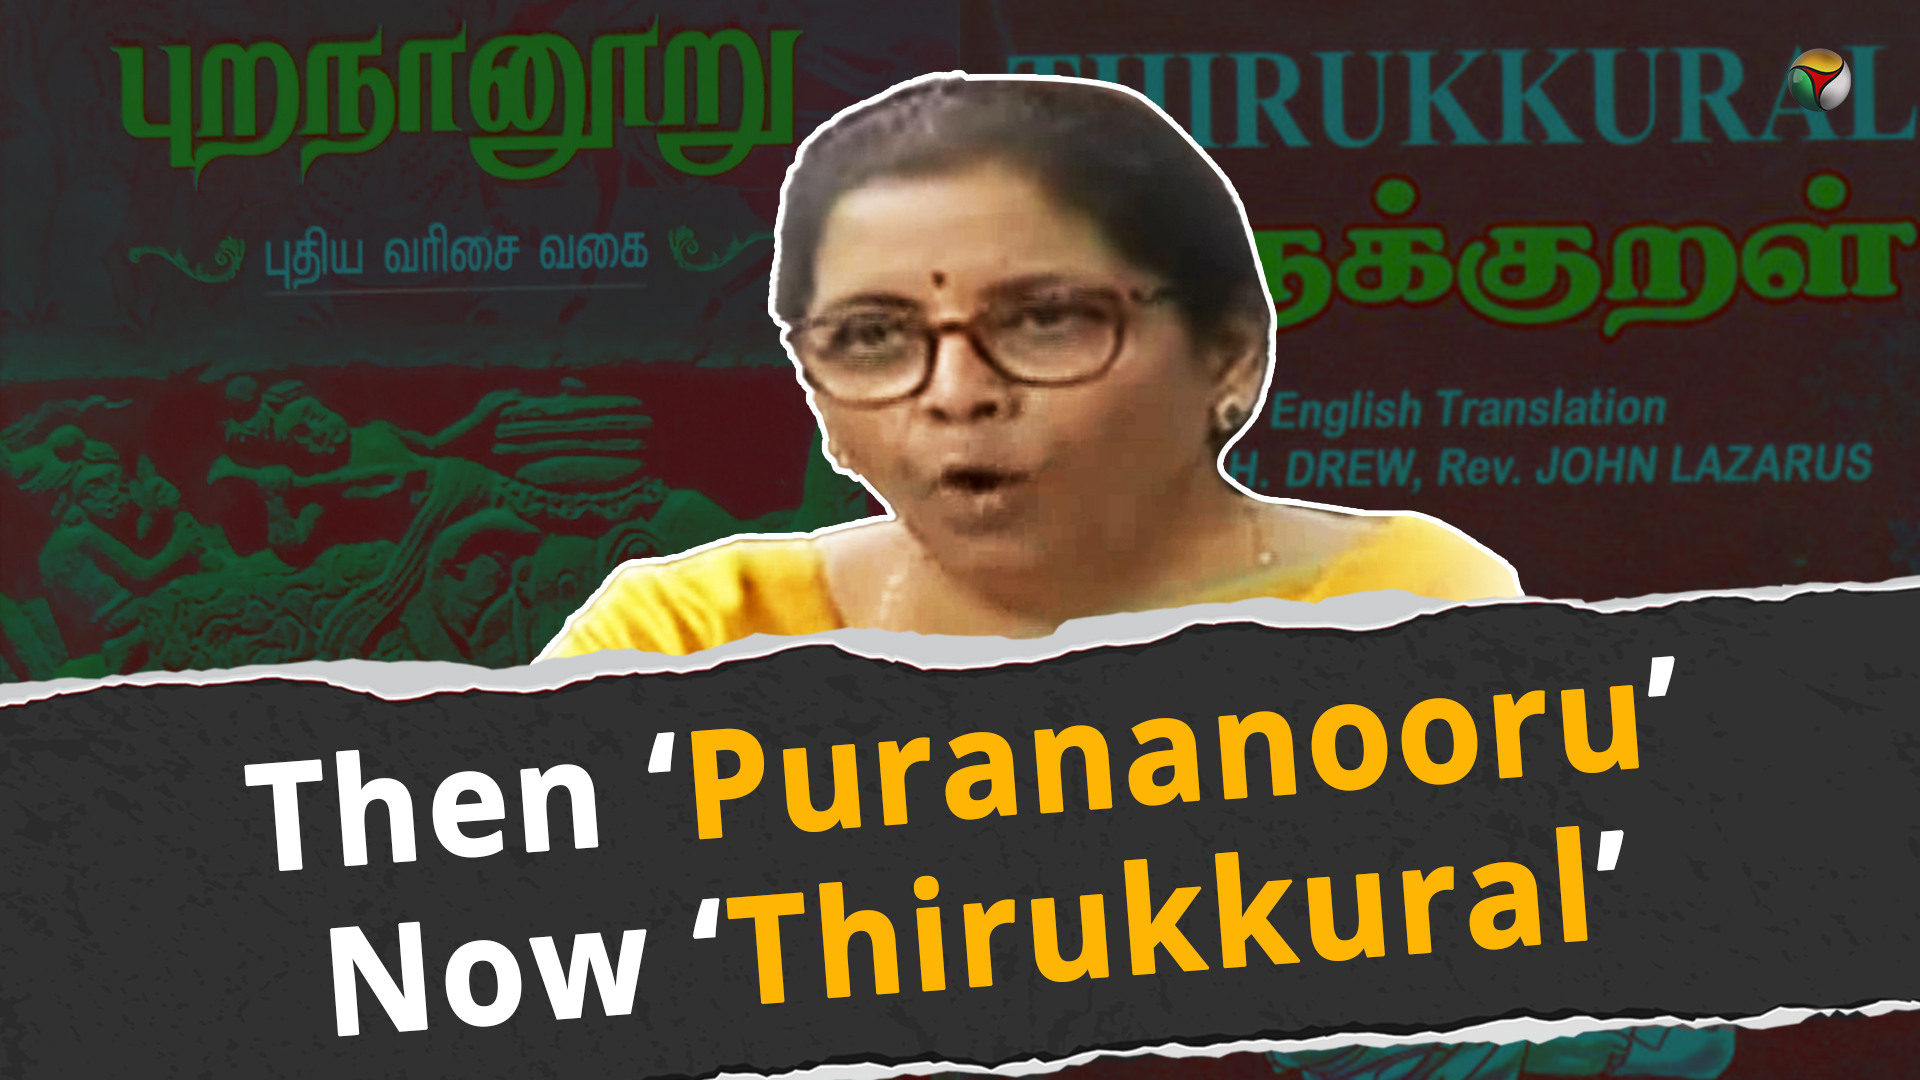 Purananooru & Thirukkural: When Nirmala was heckled both times